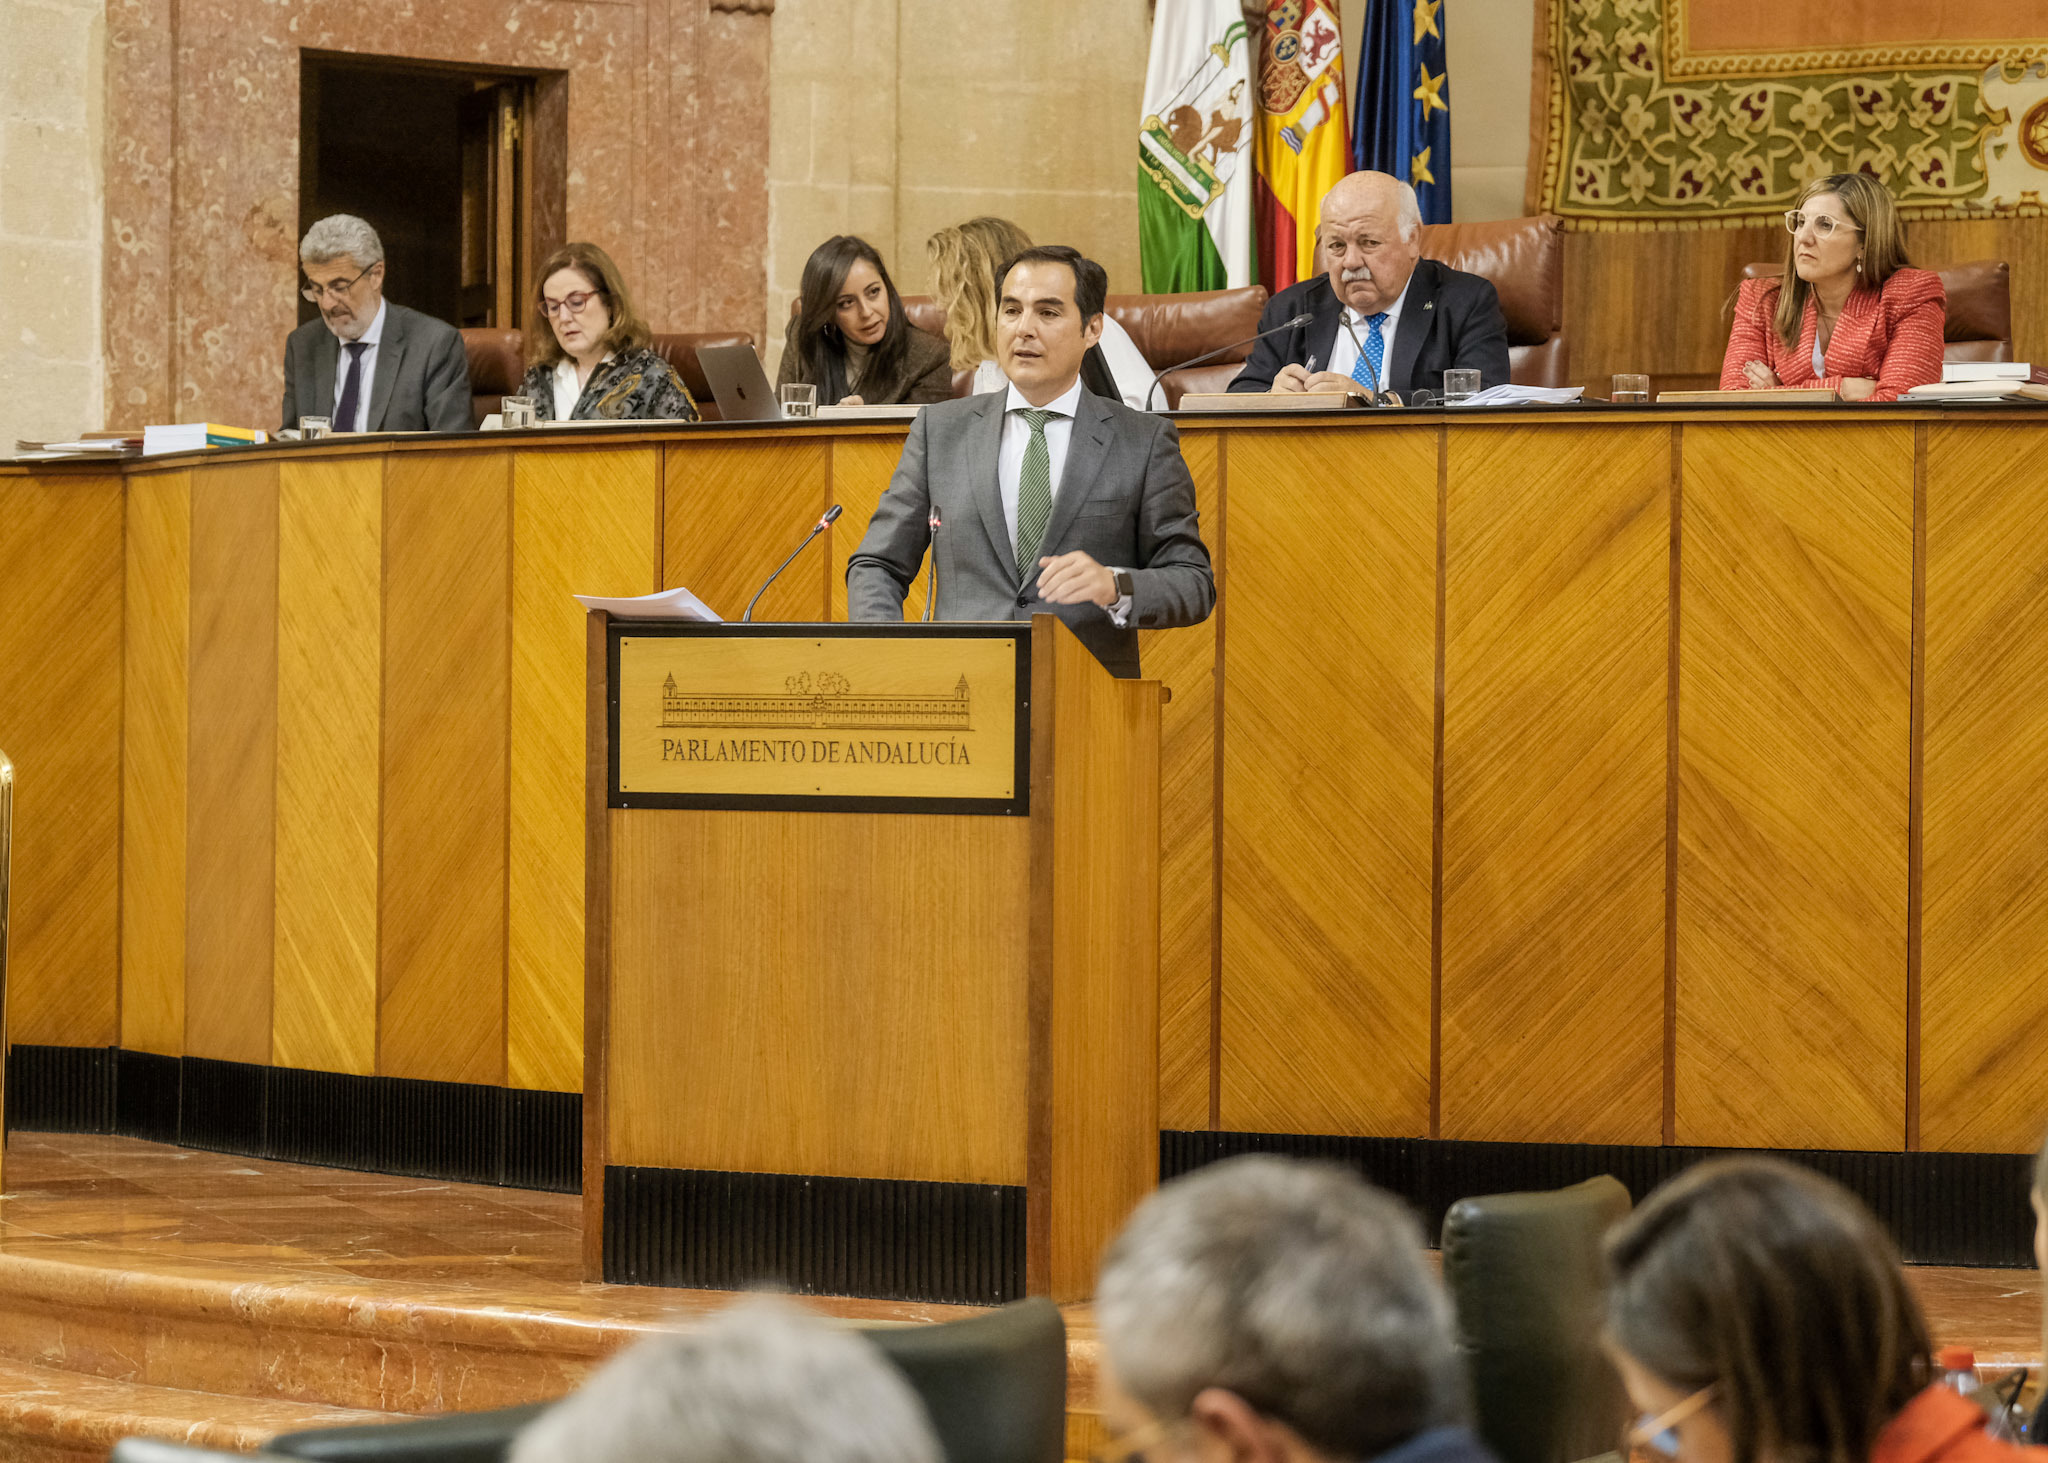 El consejero Nieto, la semana pasada en el Parlamento andaluz.